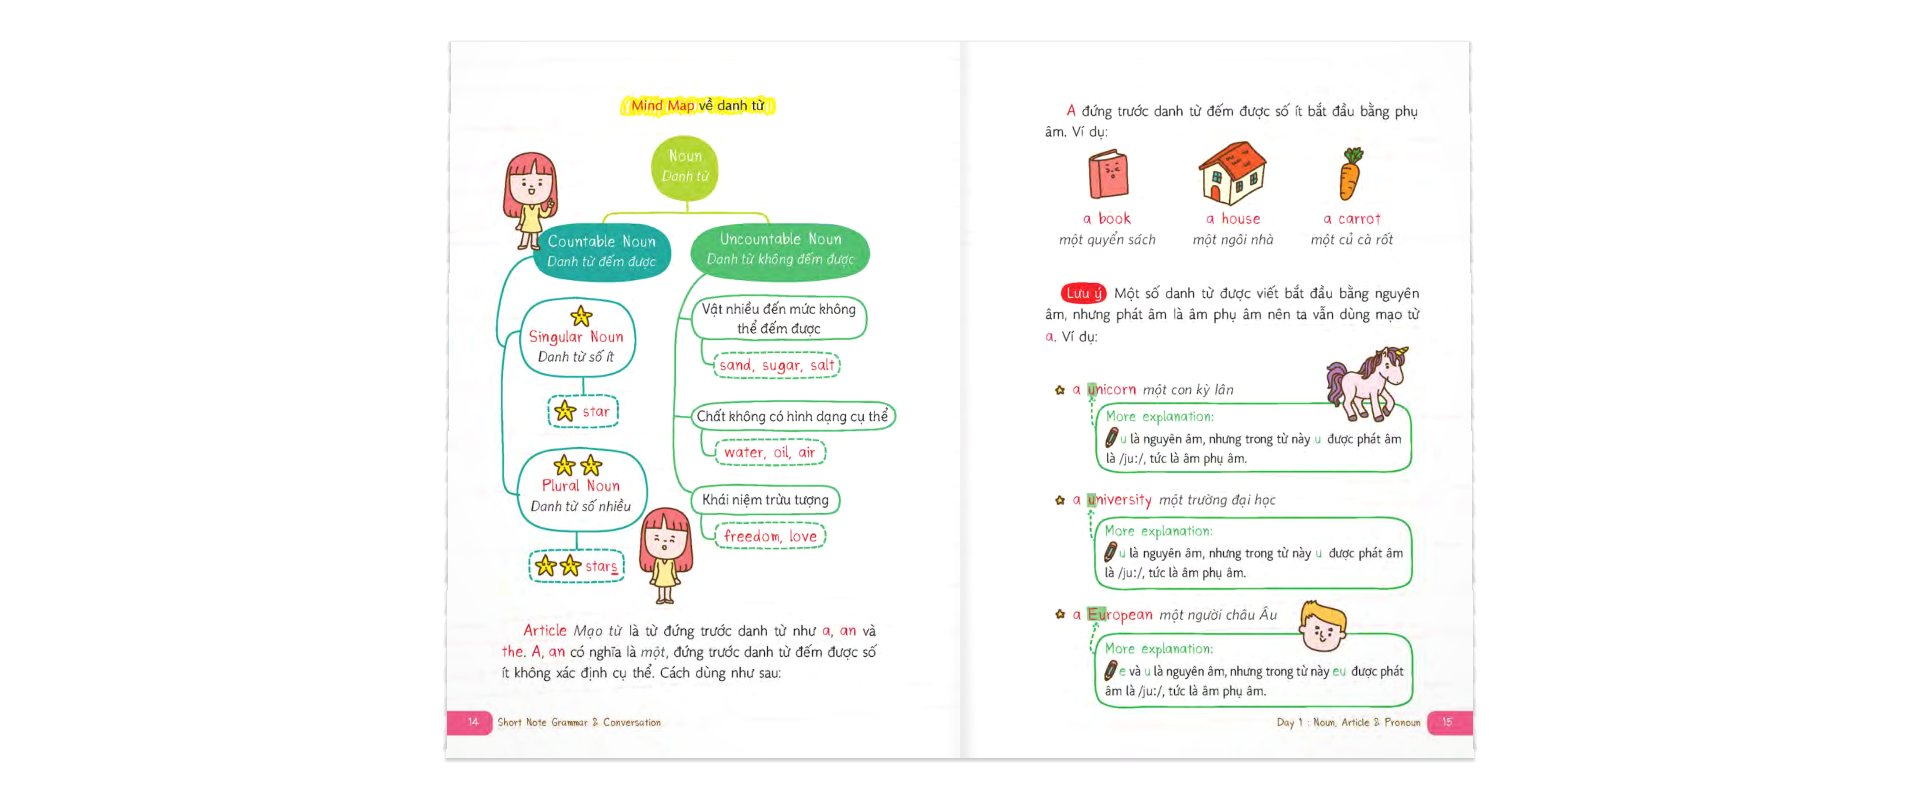 Short Note Grammar & Conversation - Học Đàm Thoại Tiếng Anh Chuẩn Ngữ Pháp PDF